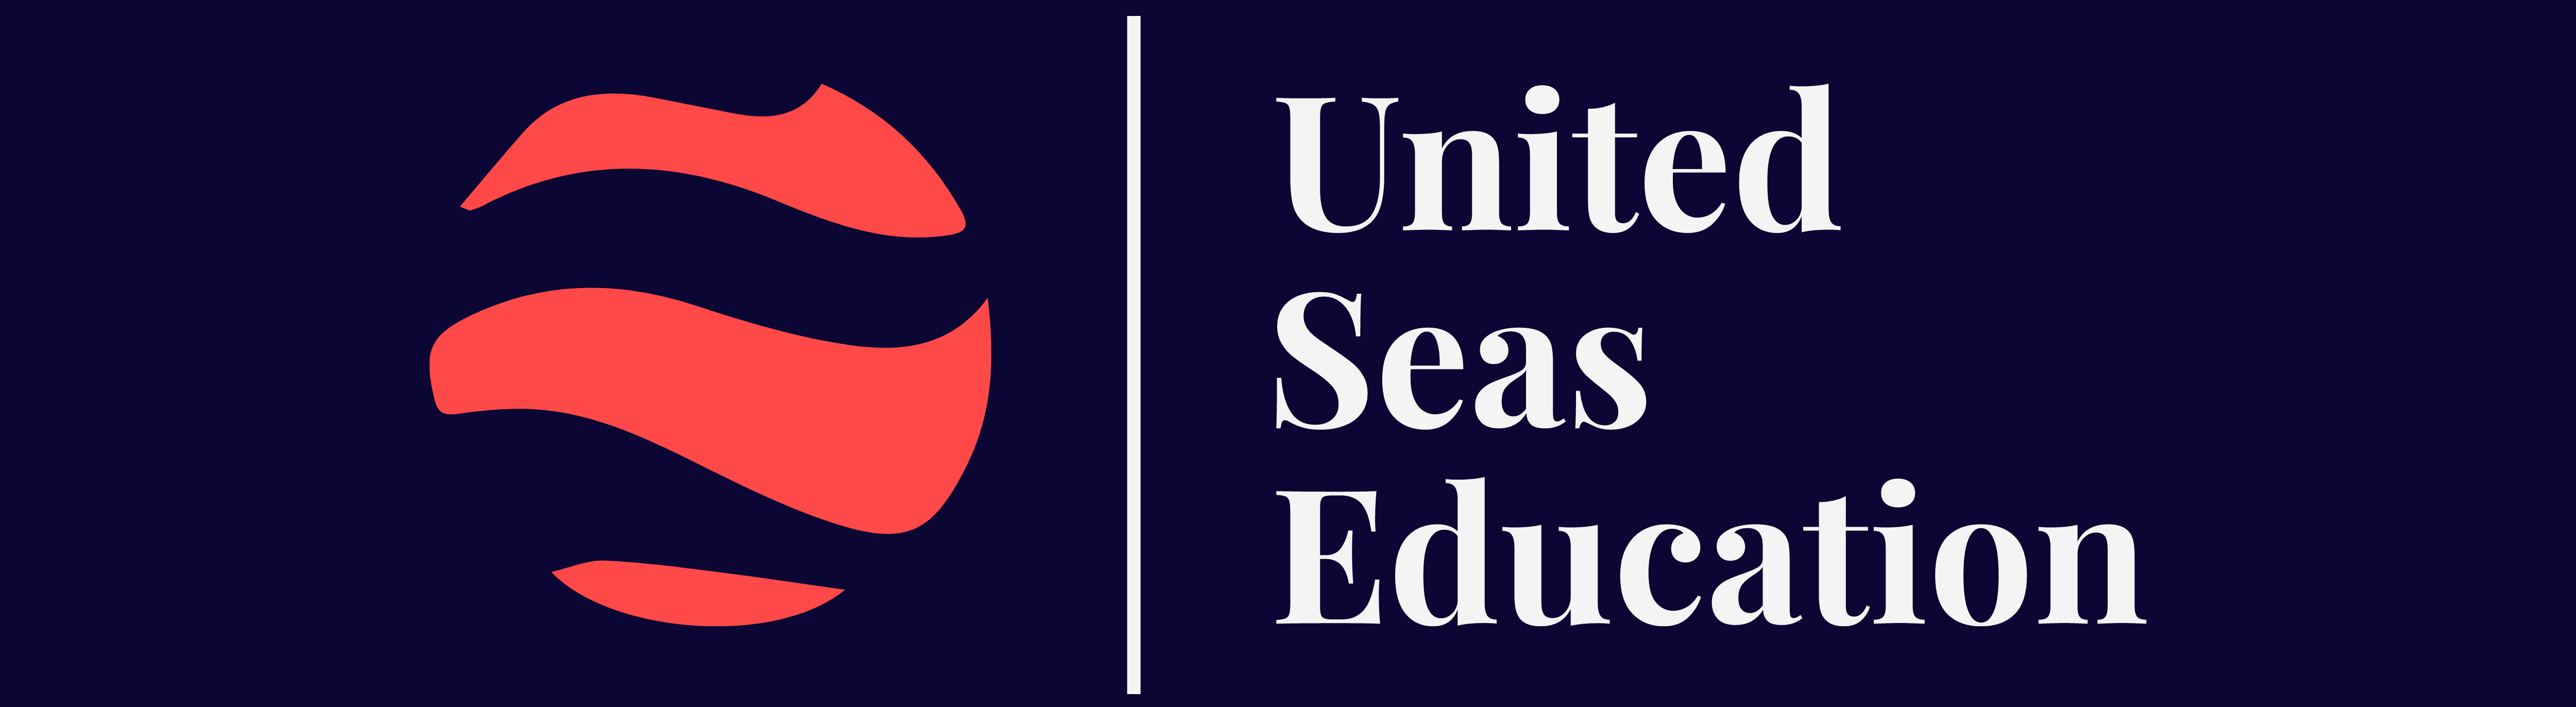 United Seas Education